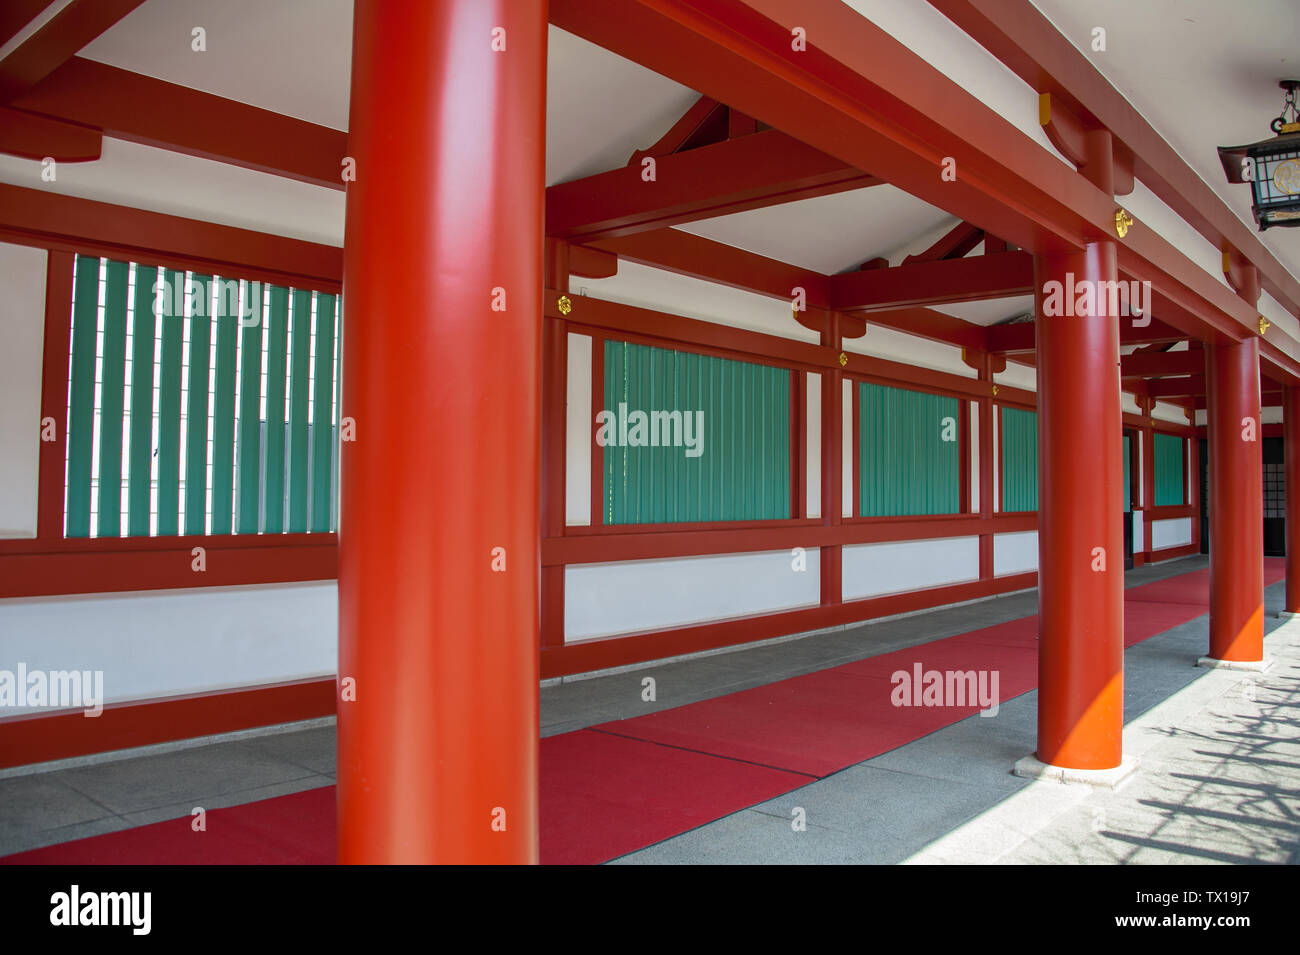 L'architecture de style traditionnel japonais à un Sanctuaire Shinto. Piliers de couleur vermeille une ligne de couloir ombragé à l'ancienne Hie Jinja, Tokyo Banque D'Images